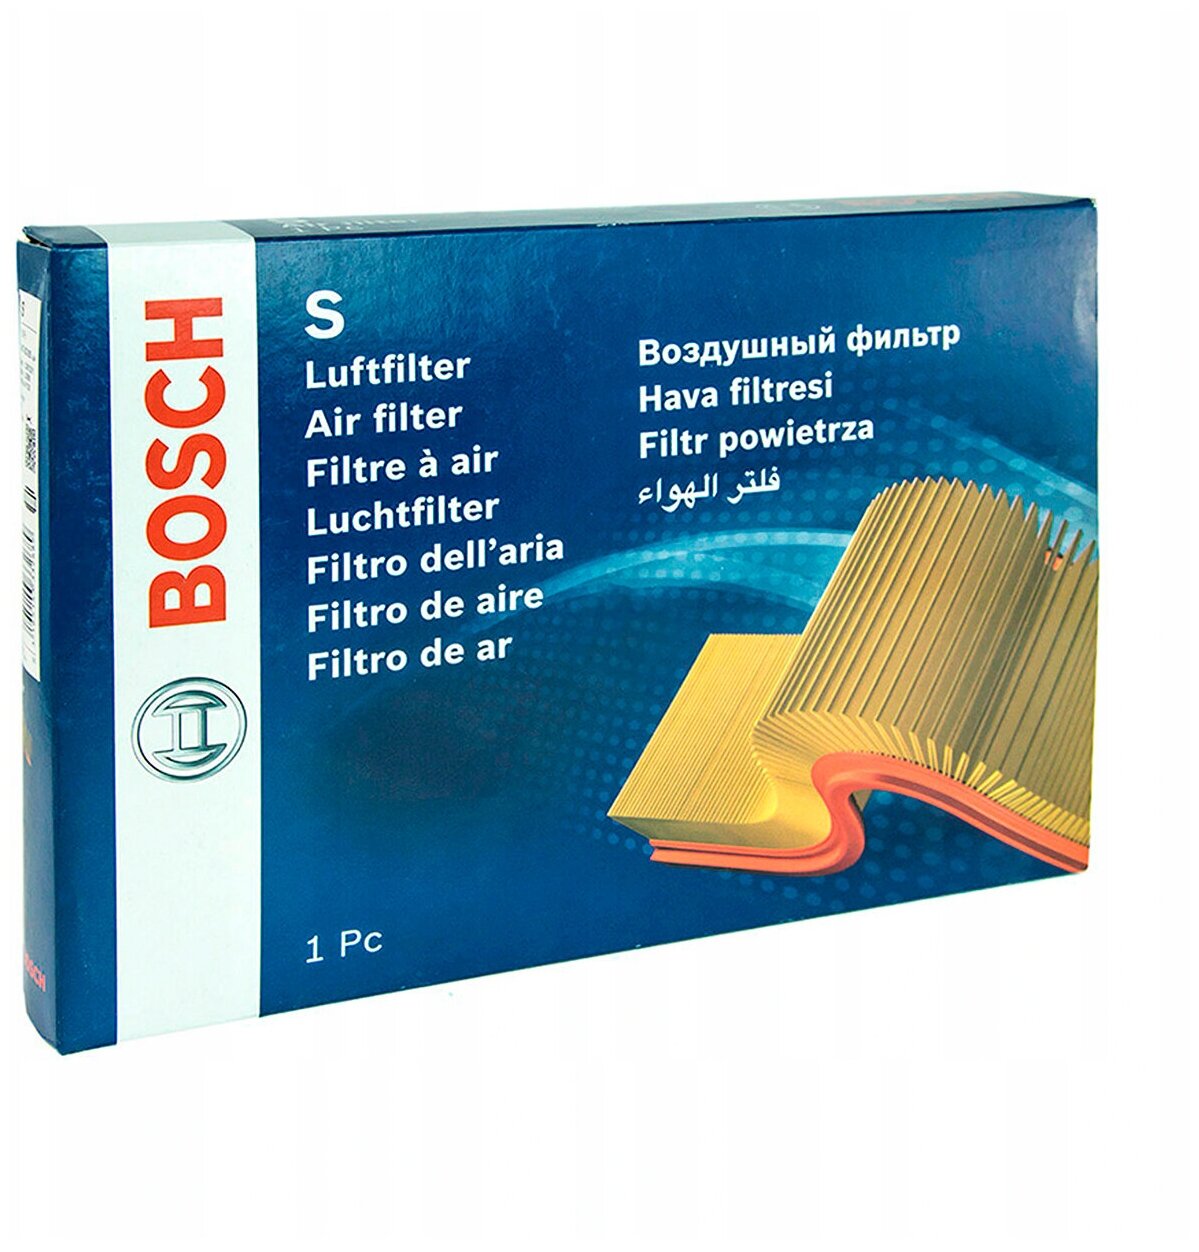 Воздушный фильтр Bosch - фото №1